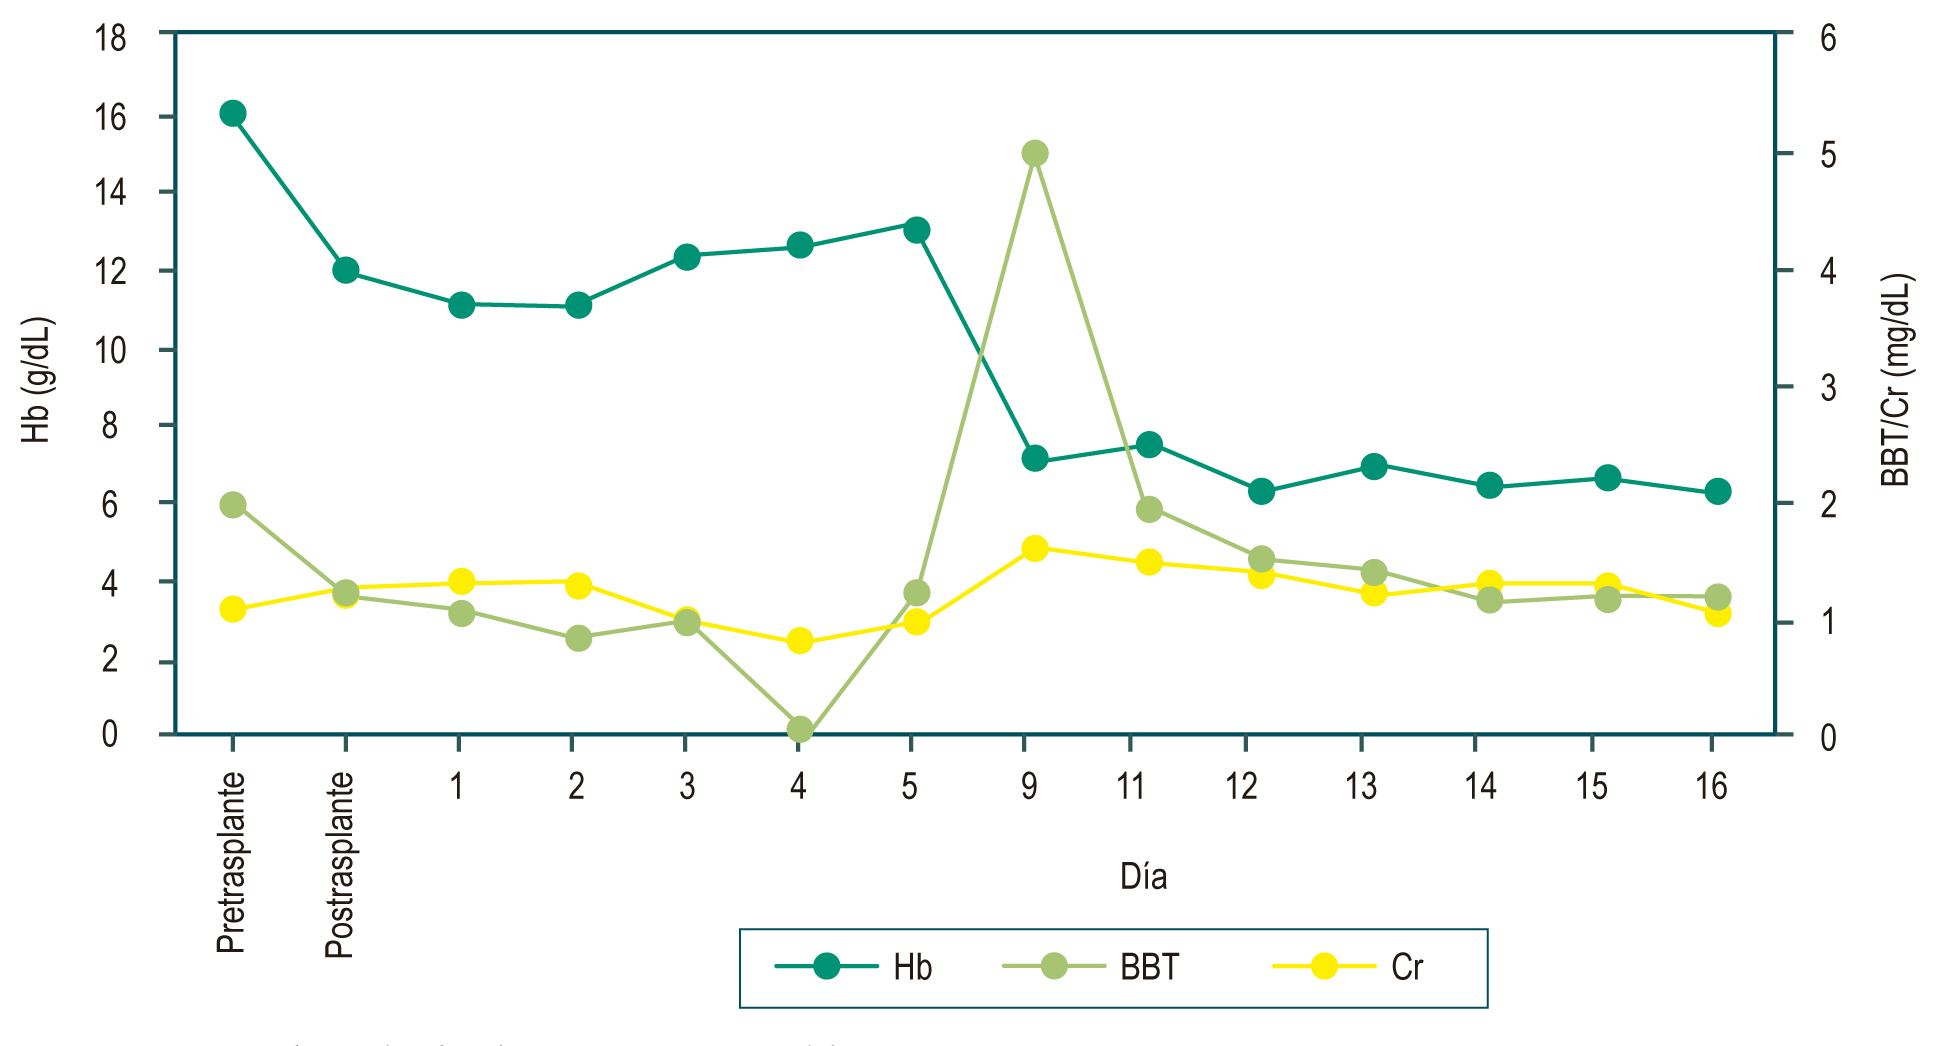 Figura 1. Reporte de niveles de Hb, BBT y Cr. Fuente: elaboración propia